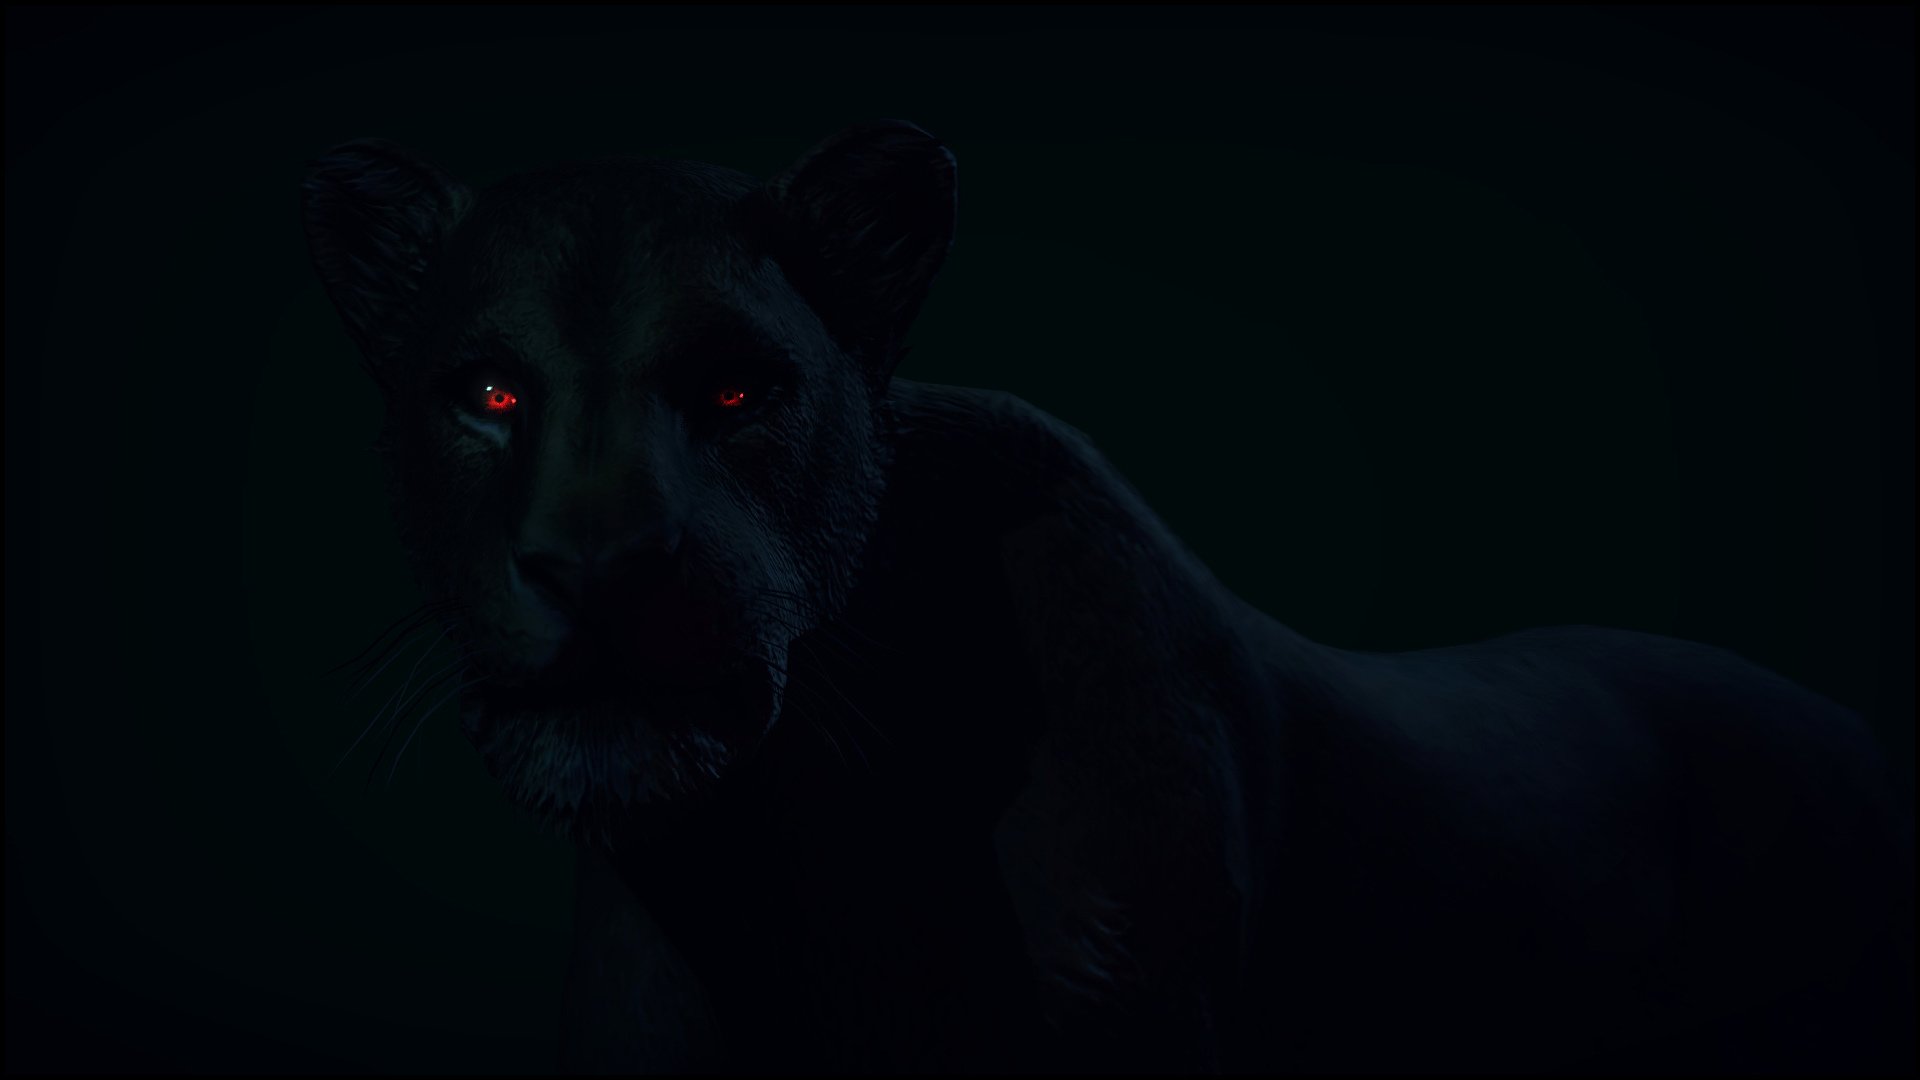 фанфик глаза пантеры светятся в ночи фото 52